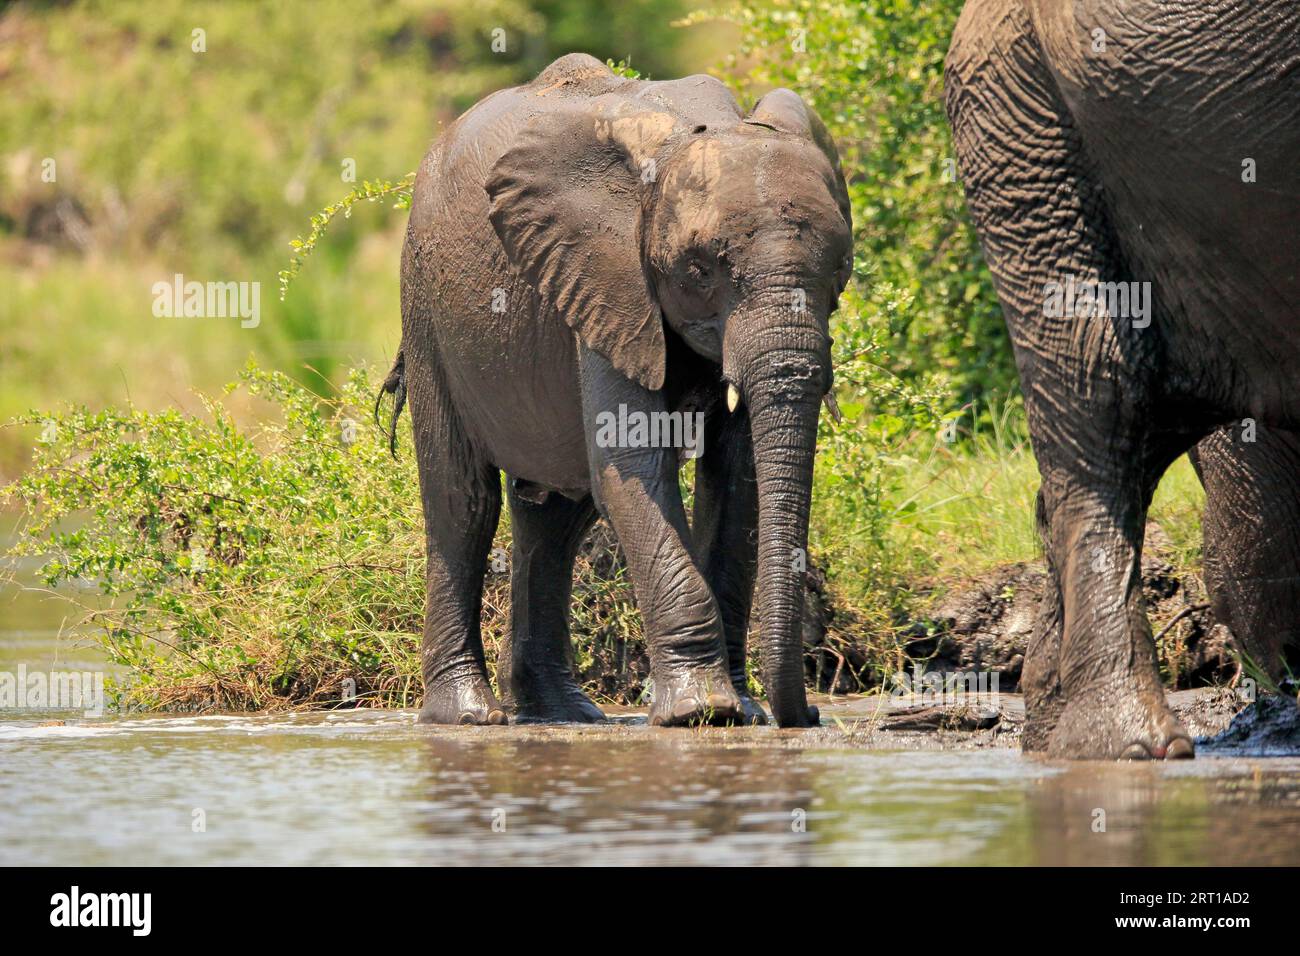 Elefante africano (Loxodonta africana), animal joven, bebiendo en el agua, Parque Nacional Kruger, Sudáfrica Foto de stock